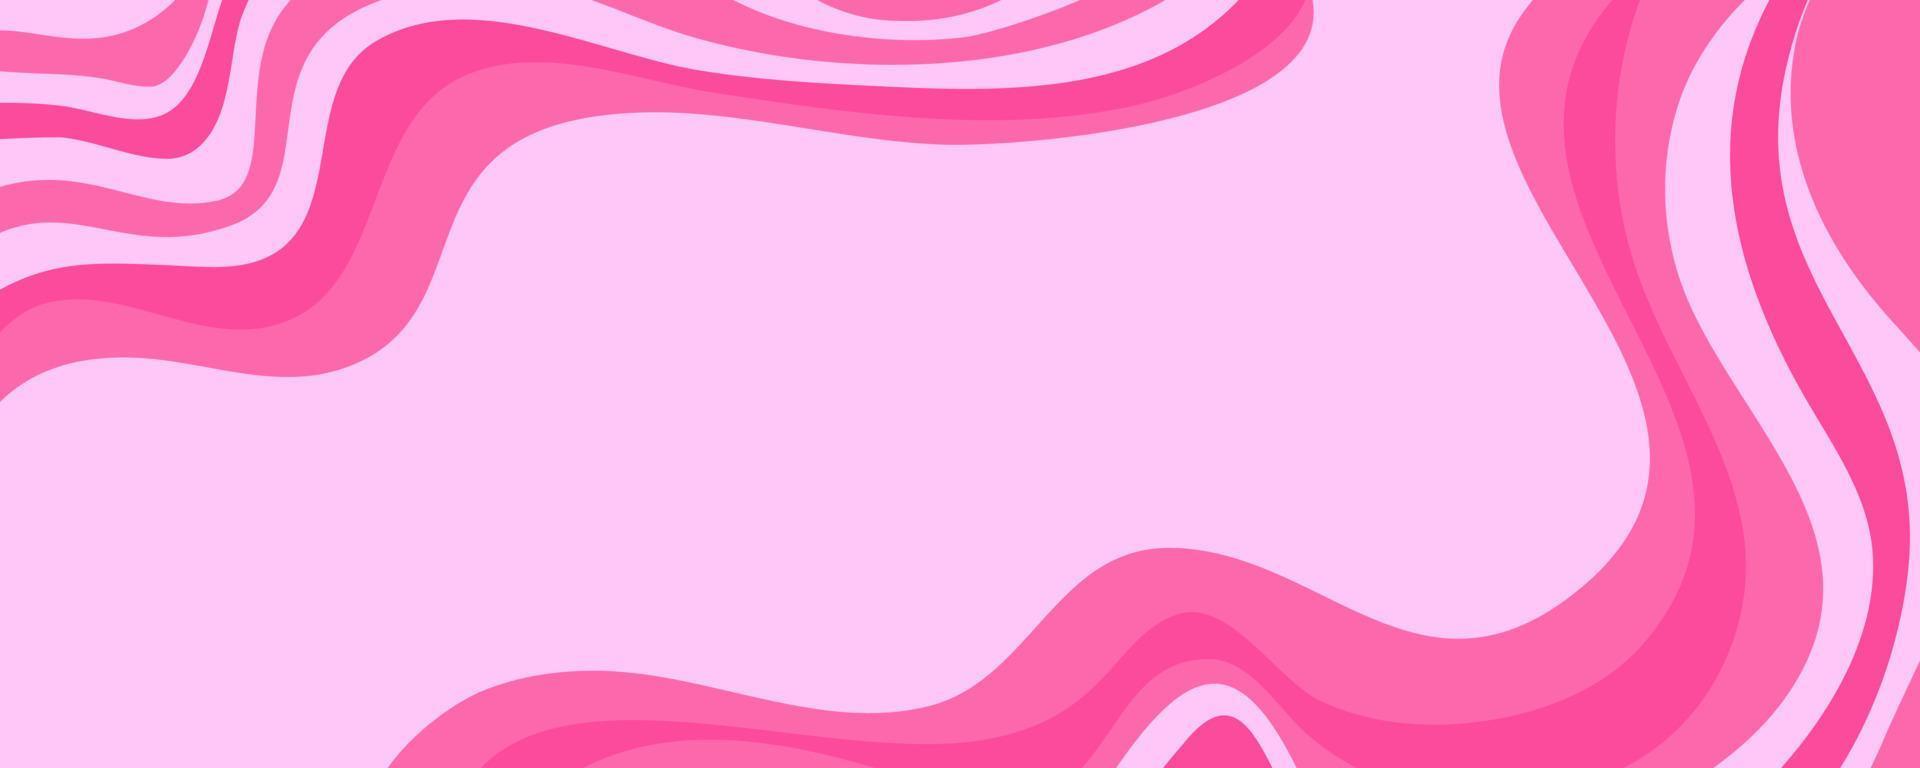 fundo de onda y2k para design retrô. fundo rosa de mármore groovy líquido. padrão roxo y2k em estilo moderno rosa. papel de parede de ondas retrô psicodélicas vetor